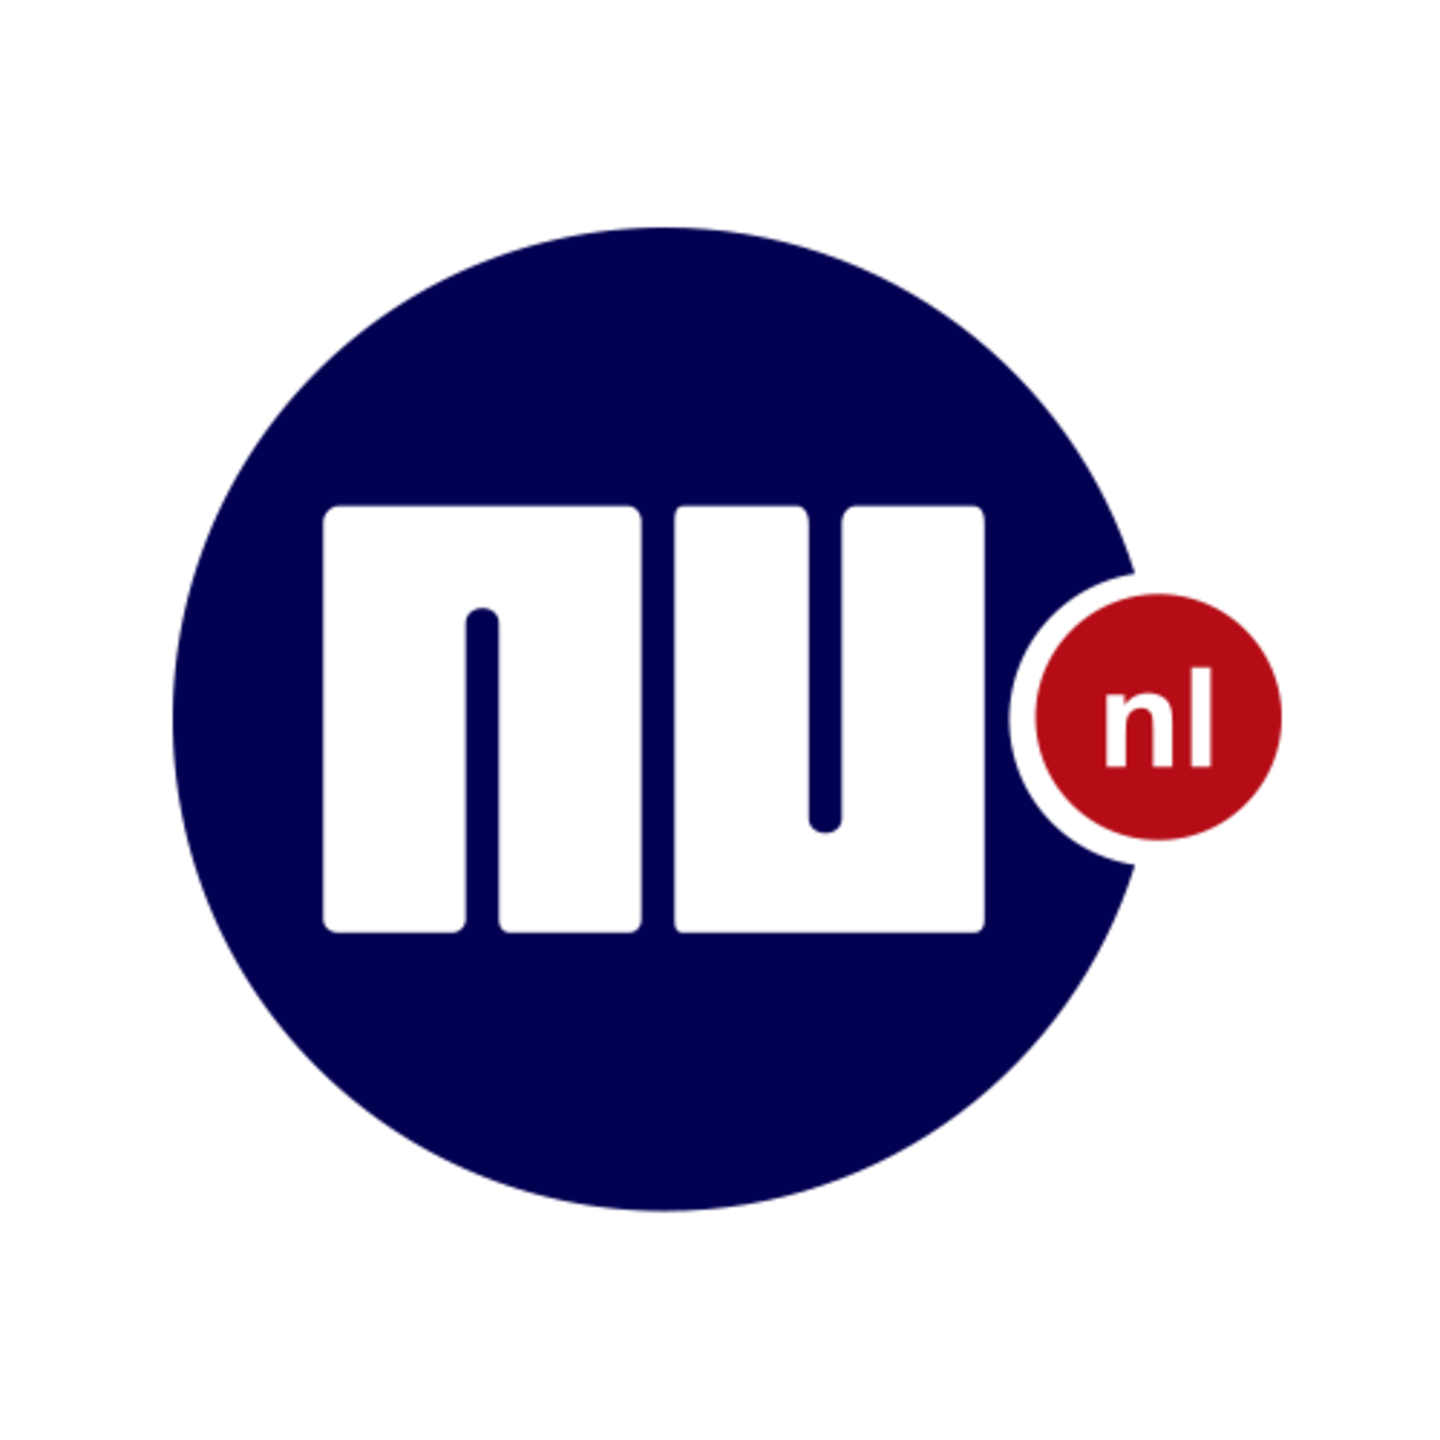 NU nl logo free download #40189